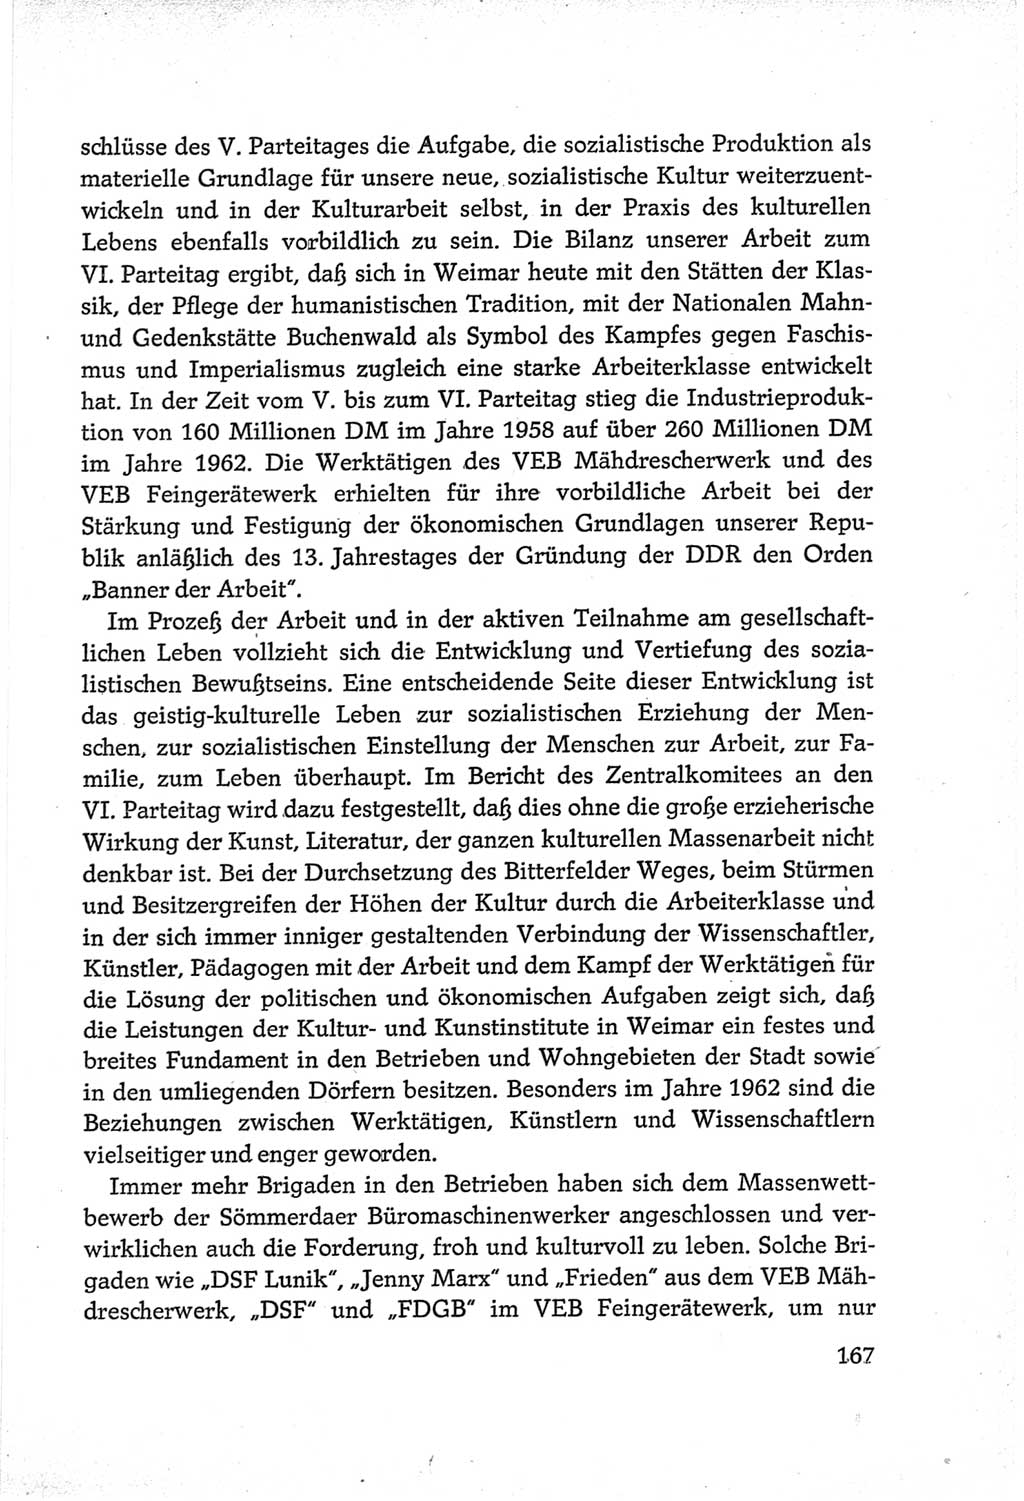 Protokoll der Verhandlungen des Ⅵ. Parteitages der Sozialistischen Einheitspartei Deutschlands (SED) [Deutsche Demokratische Republik (DDR)] 1963, Band Ⅲ, Seite 167 (Prot. Verh. Ⅵ. PT SED DDR 1963, Bd. Ⅲ, S. 167)